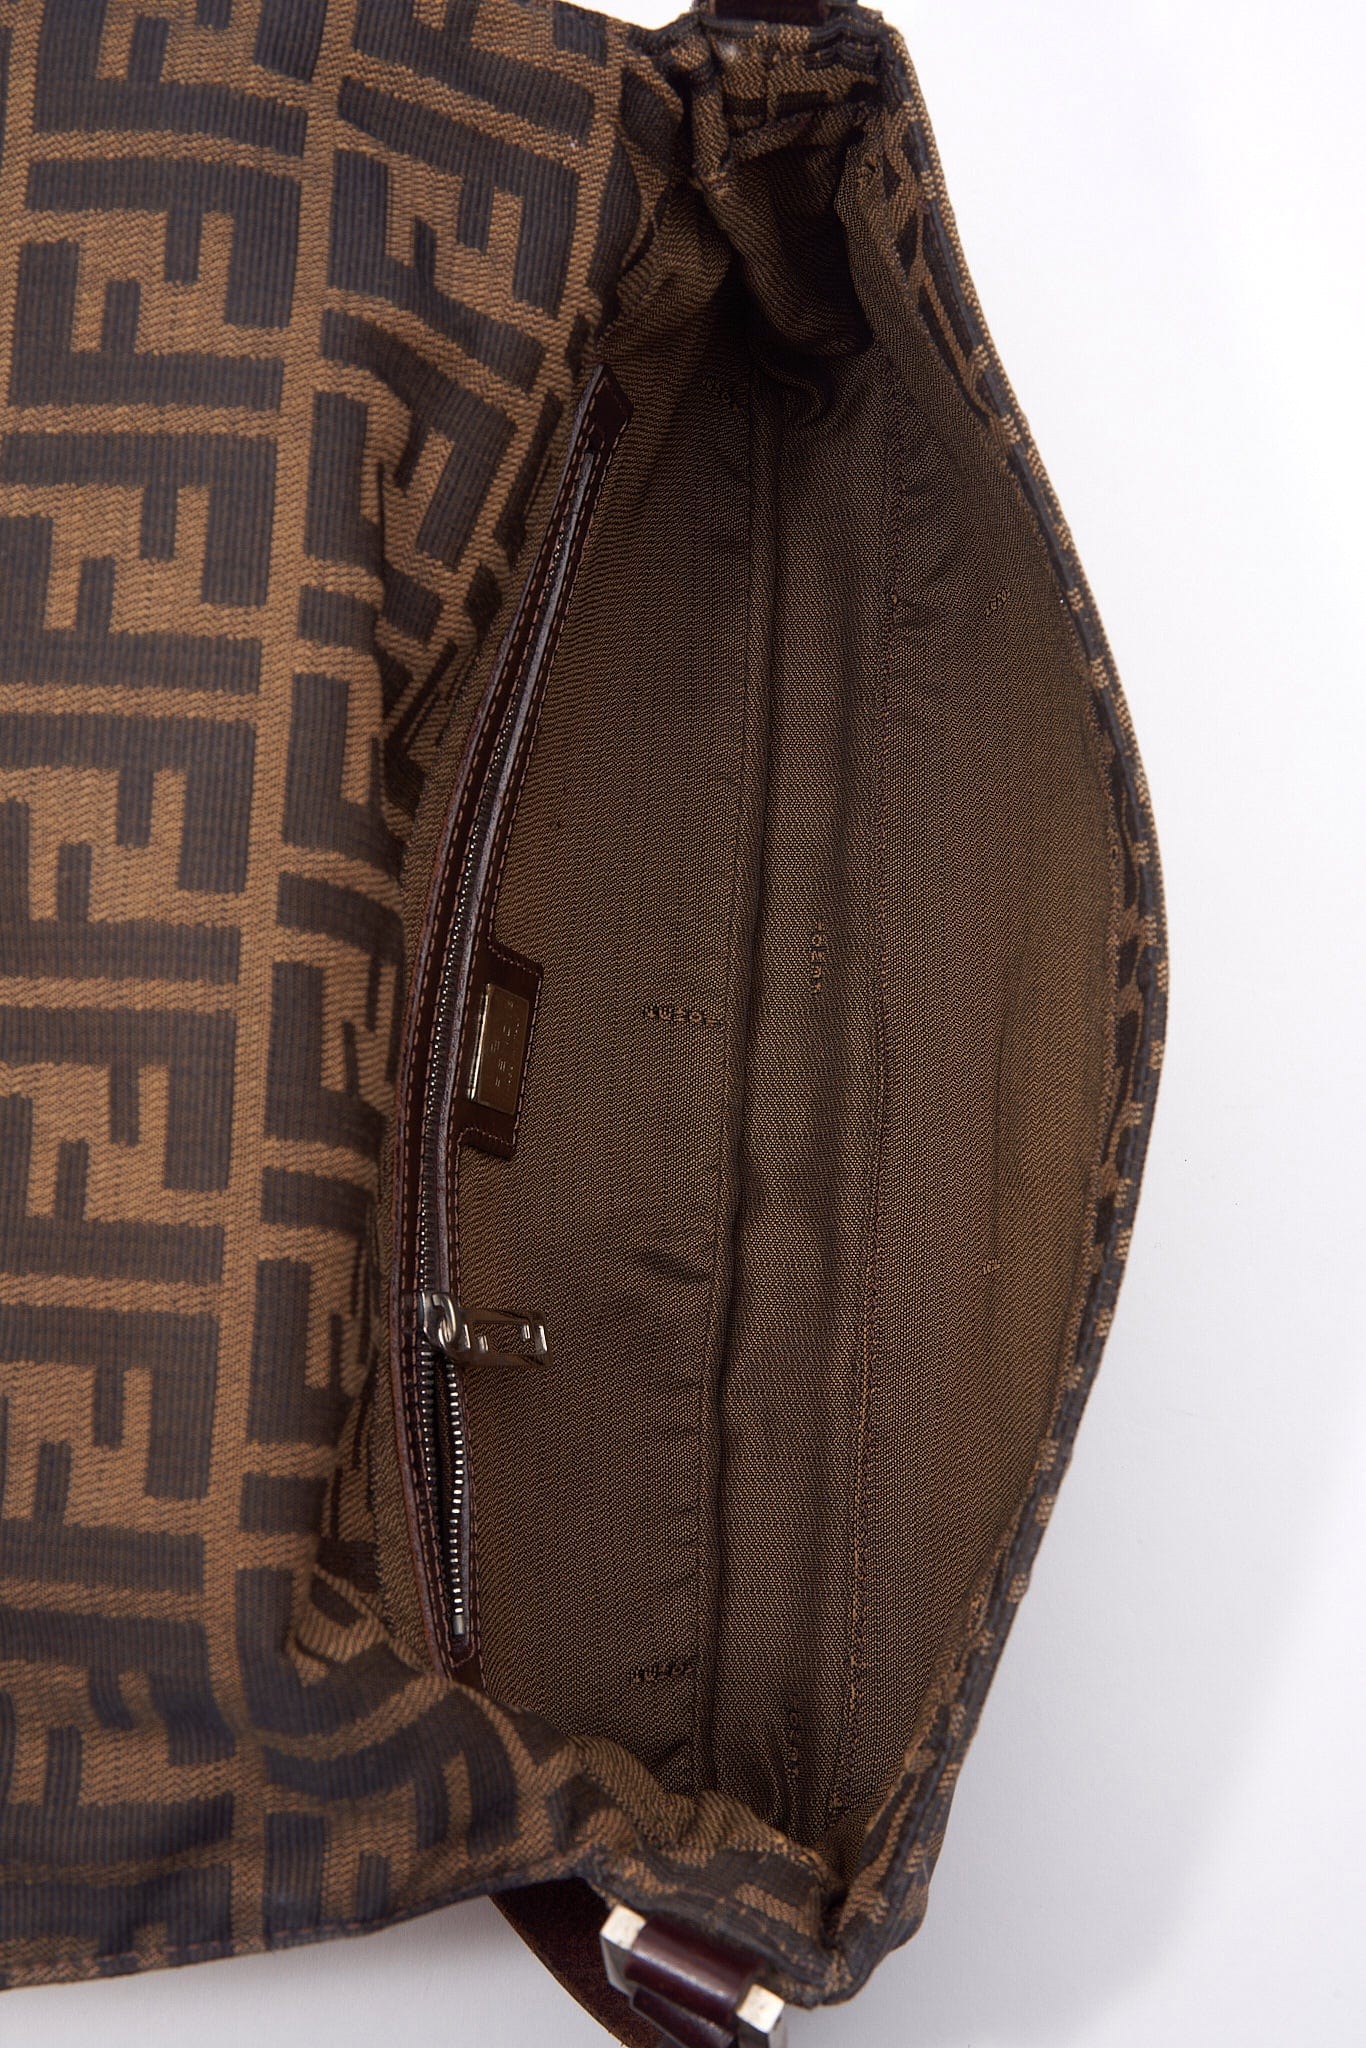 Vintage Fendi Zucca Shoulder Bag With Metal Trim